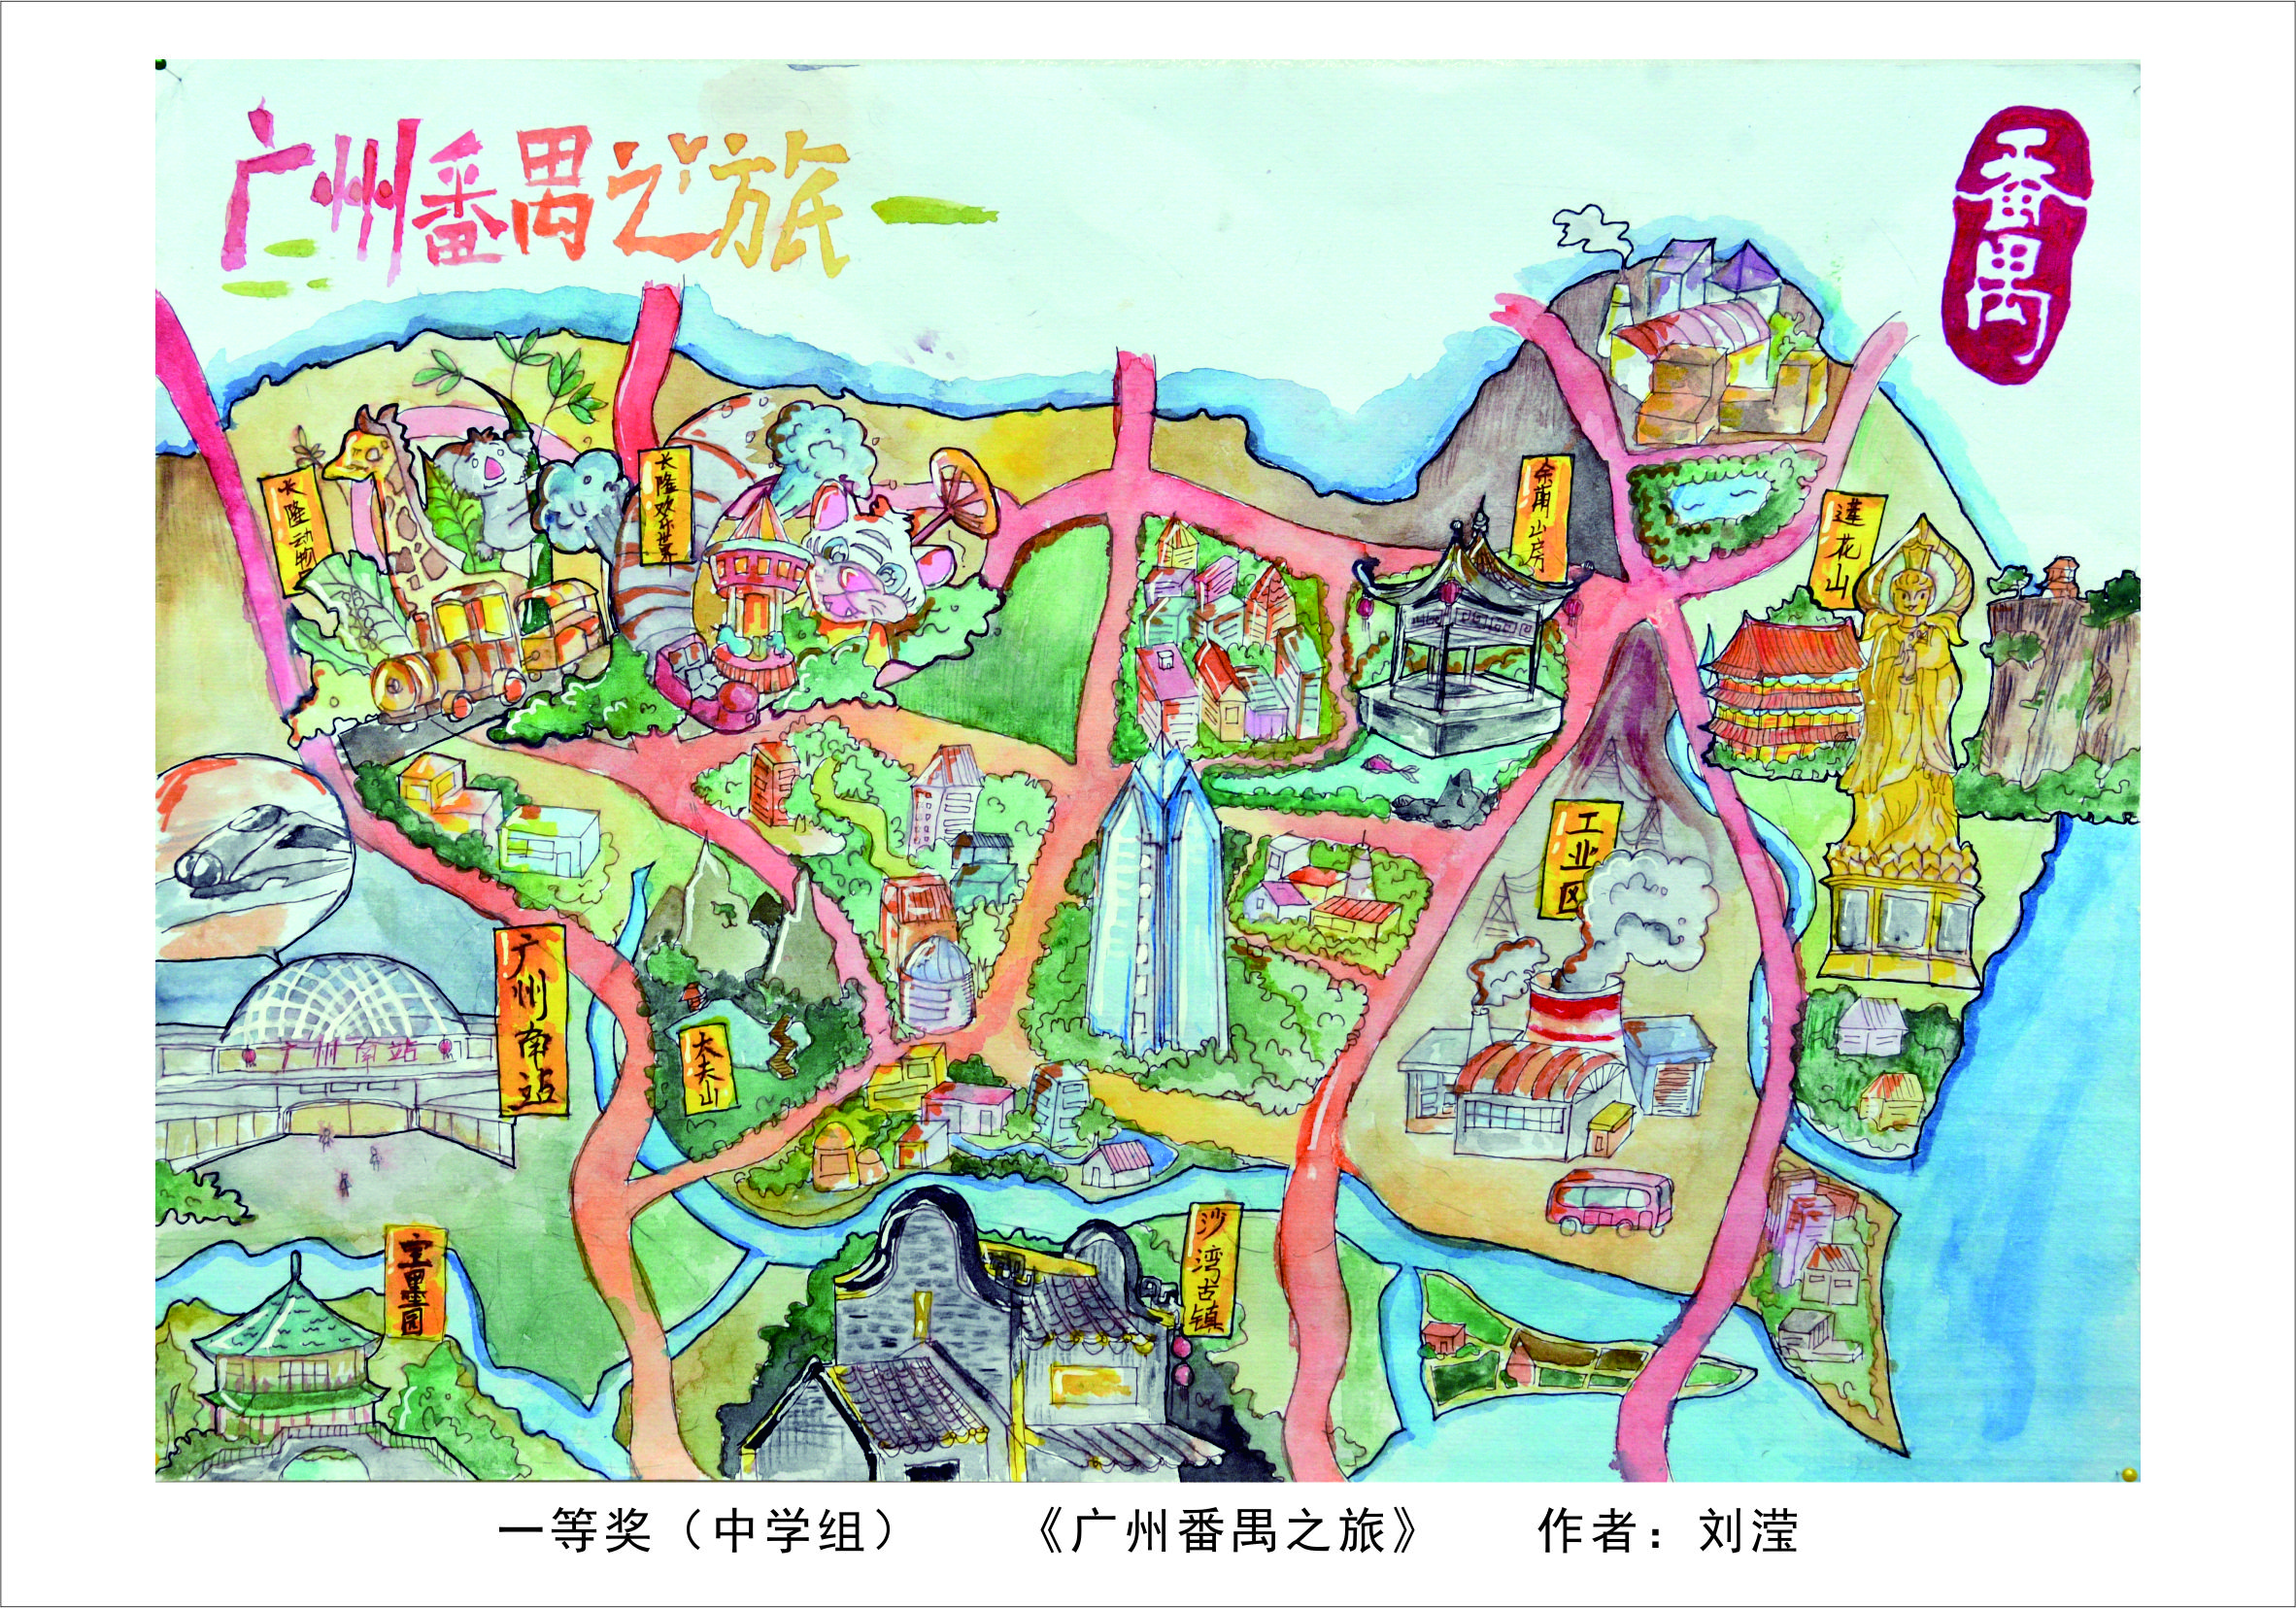 绘地图 阅广州  展自信——“畅想美丽广州”少年原创手绘地图作品展